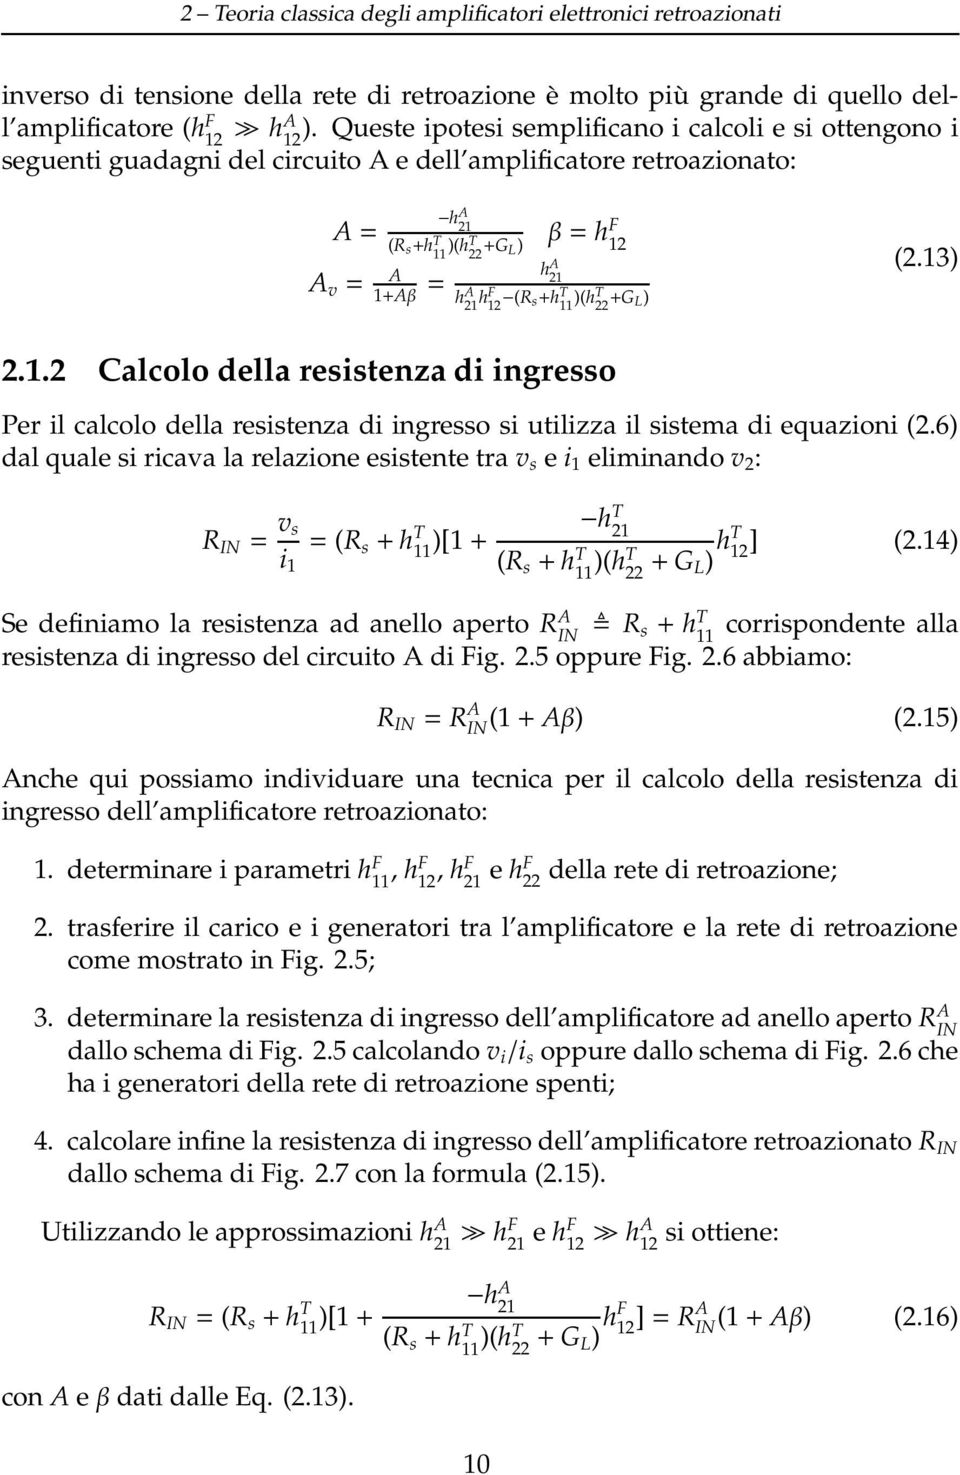 A 21 hf 12 (R s+h T 11 )(ht 22 +G L) (2.13) 2.1.2 Calcolo della resistenza di ingresso Per il calcolo della resistenza di ingresso si utilizza il sistema di equazioni (2.